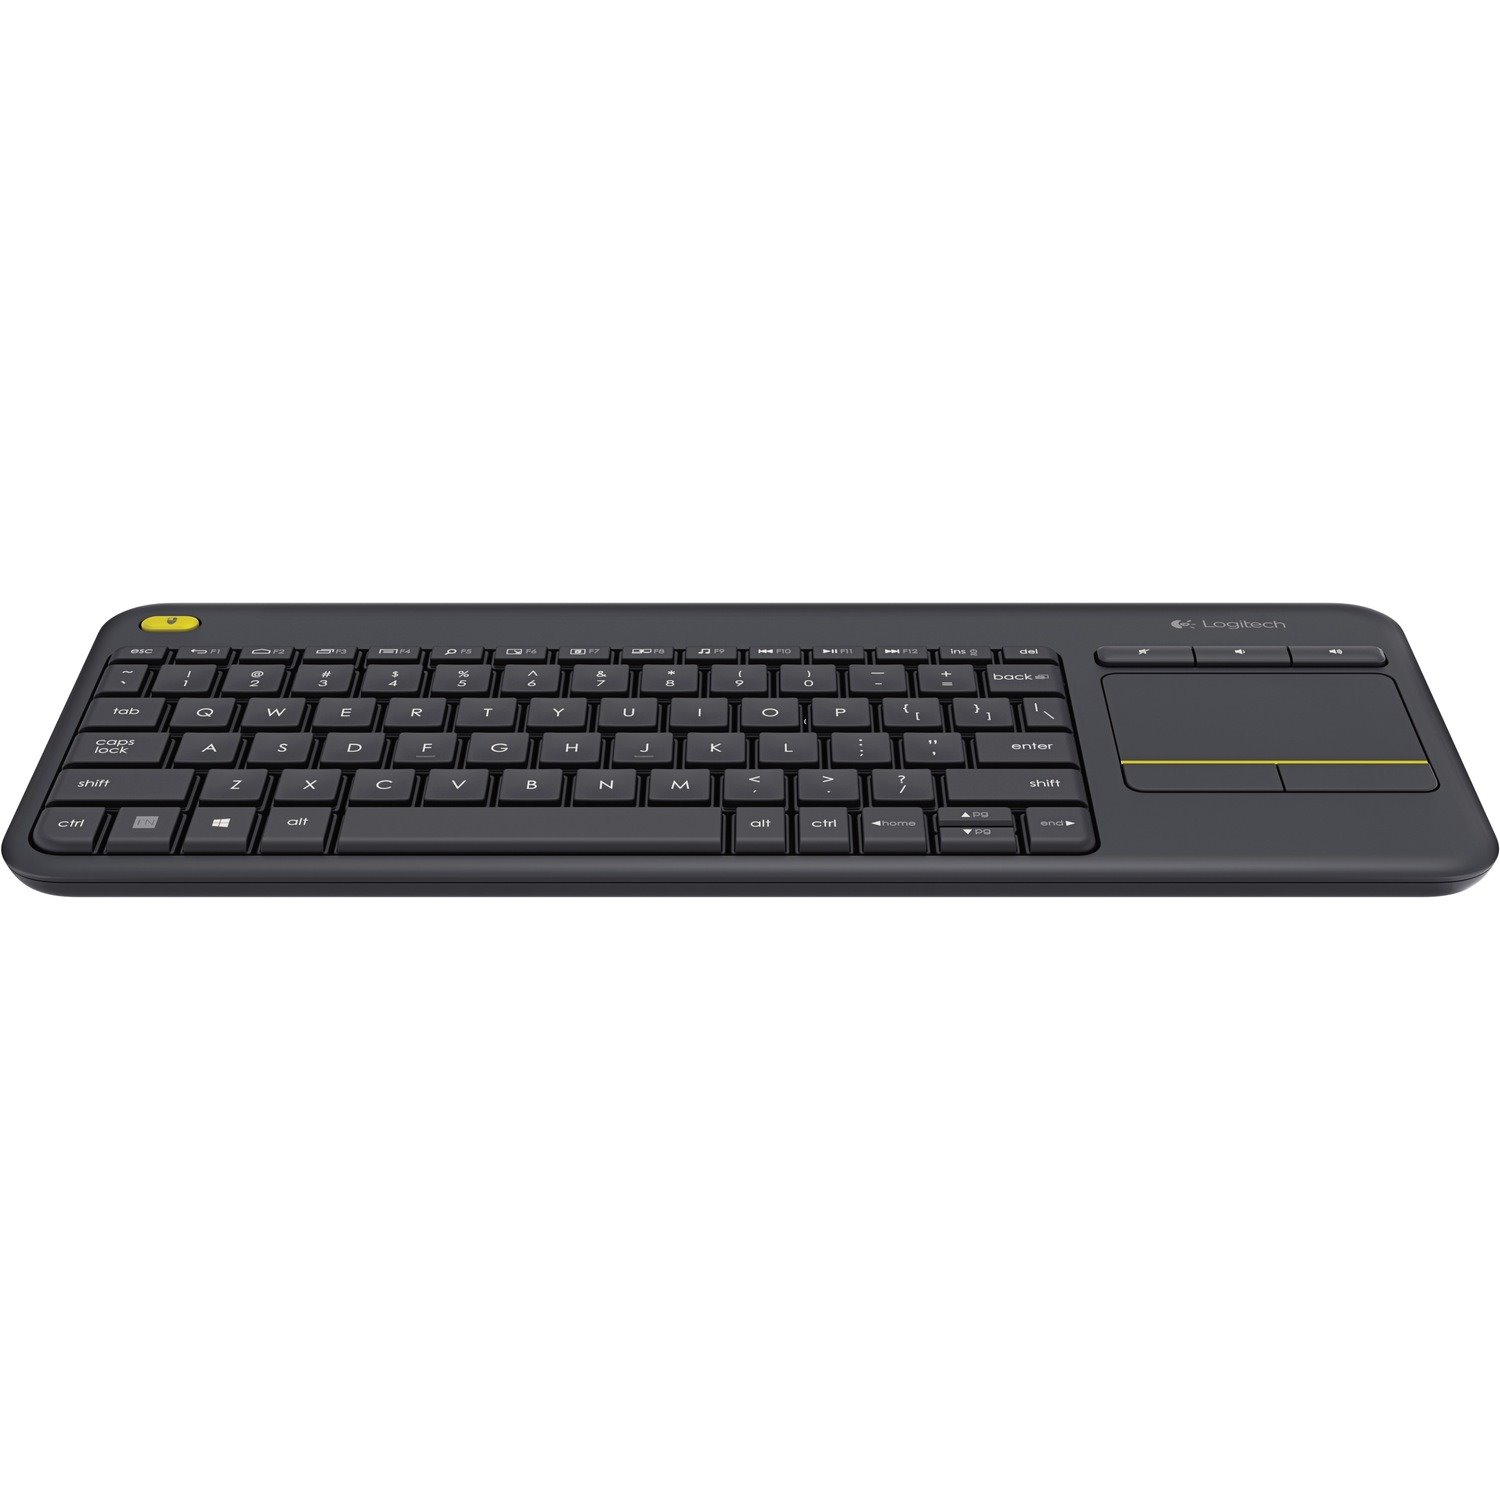 Logitech K400 Plus Keyboard - Wireless Connectivity - USB Interface - TouchPad - AZERTY Layout - Black